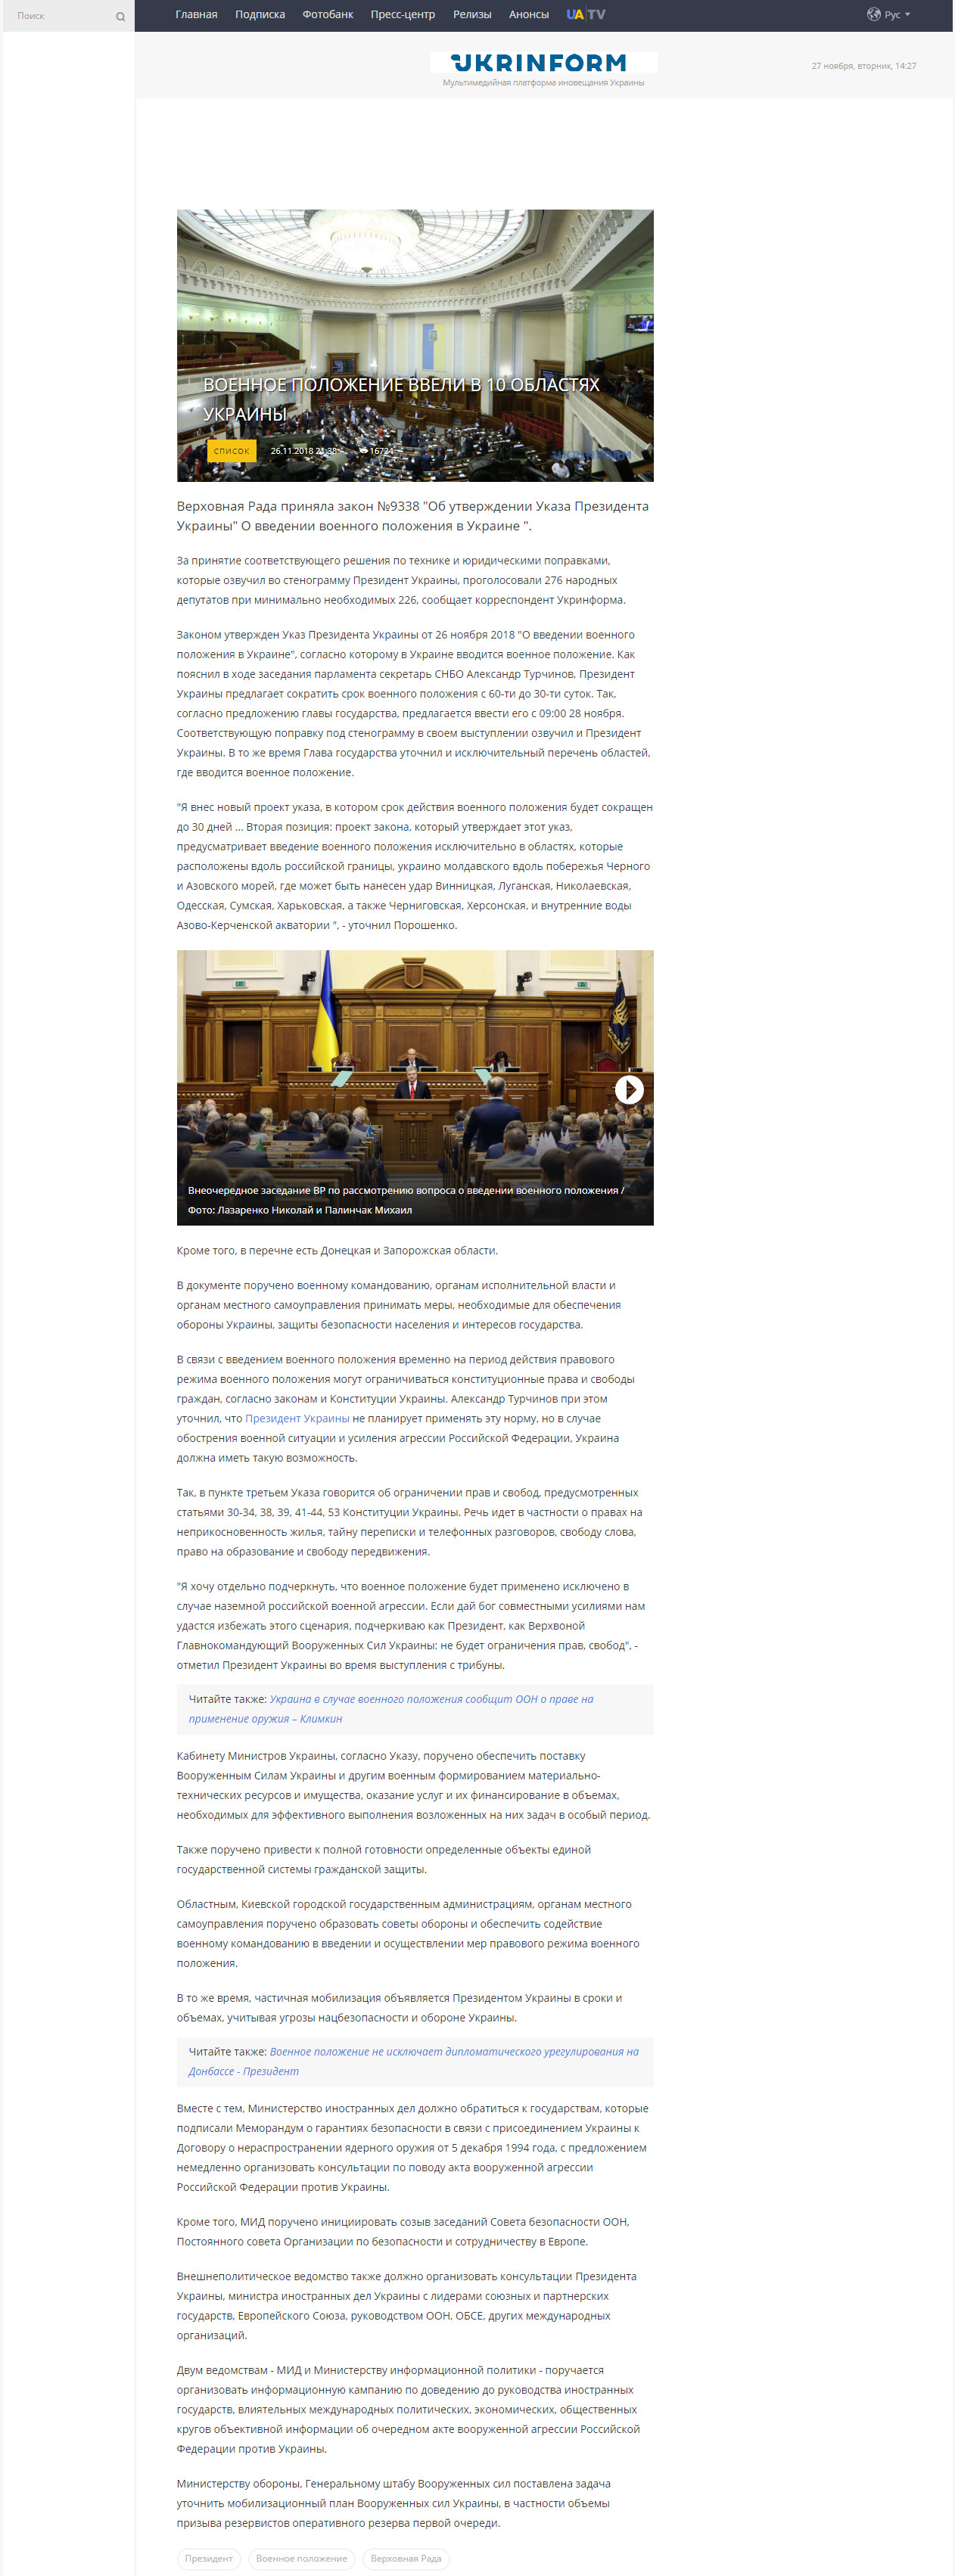 https://www.ukrinform.ru/rubric-polytics/2588227-voennoe-polozenie-vveli-v-10-oblastah-ukrainy.html